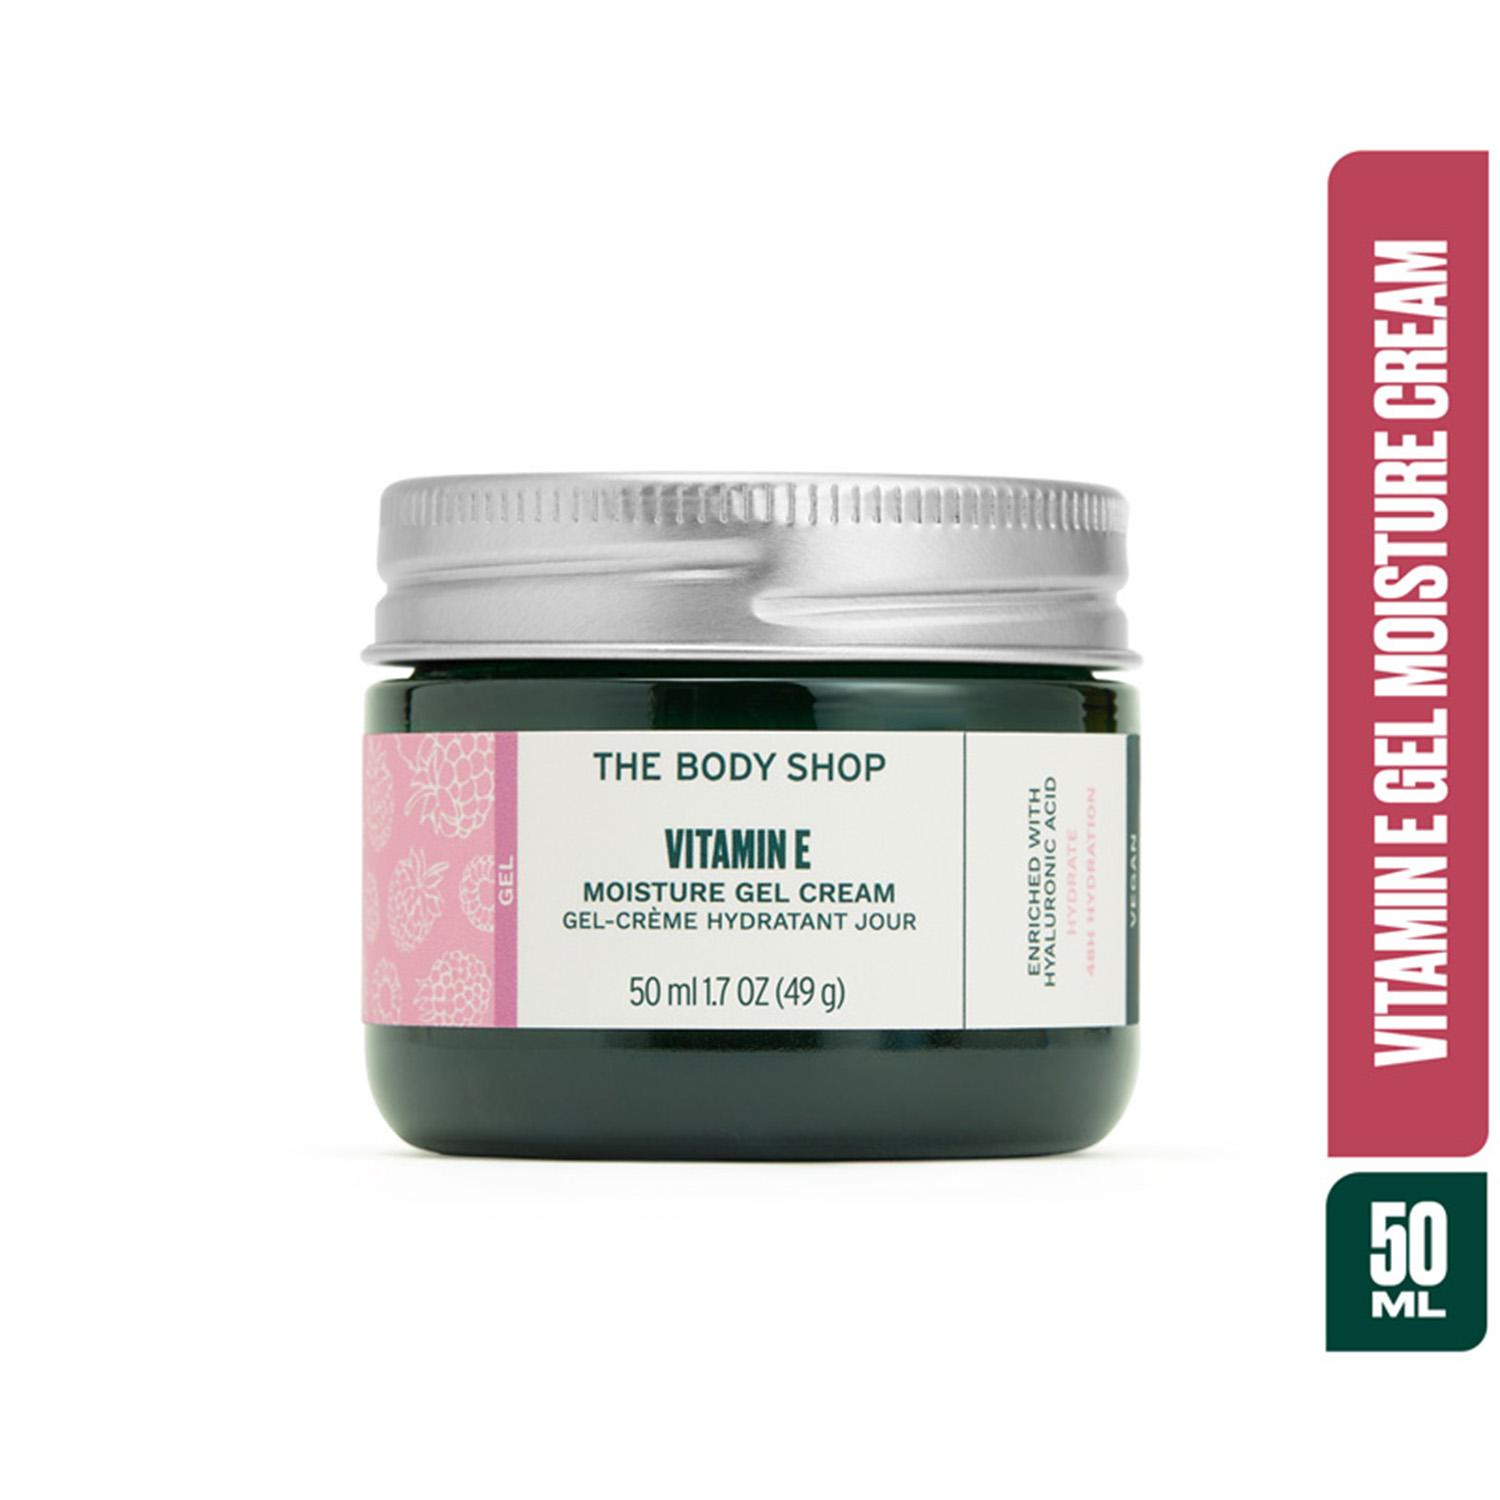 The Body Shop | The Body Shop Vitamin E Gel Moisture Cream (50ml)